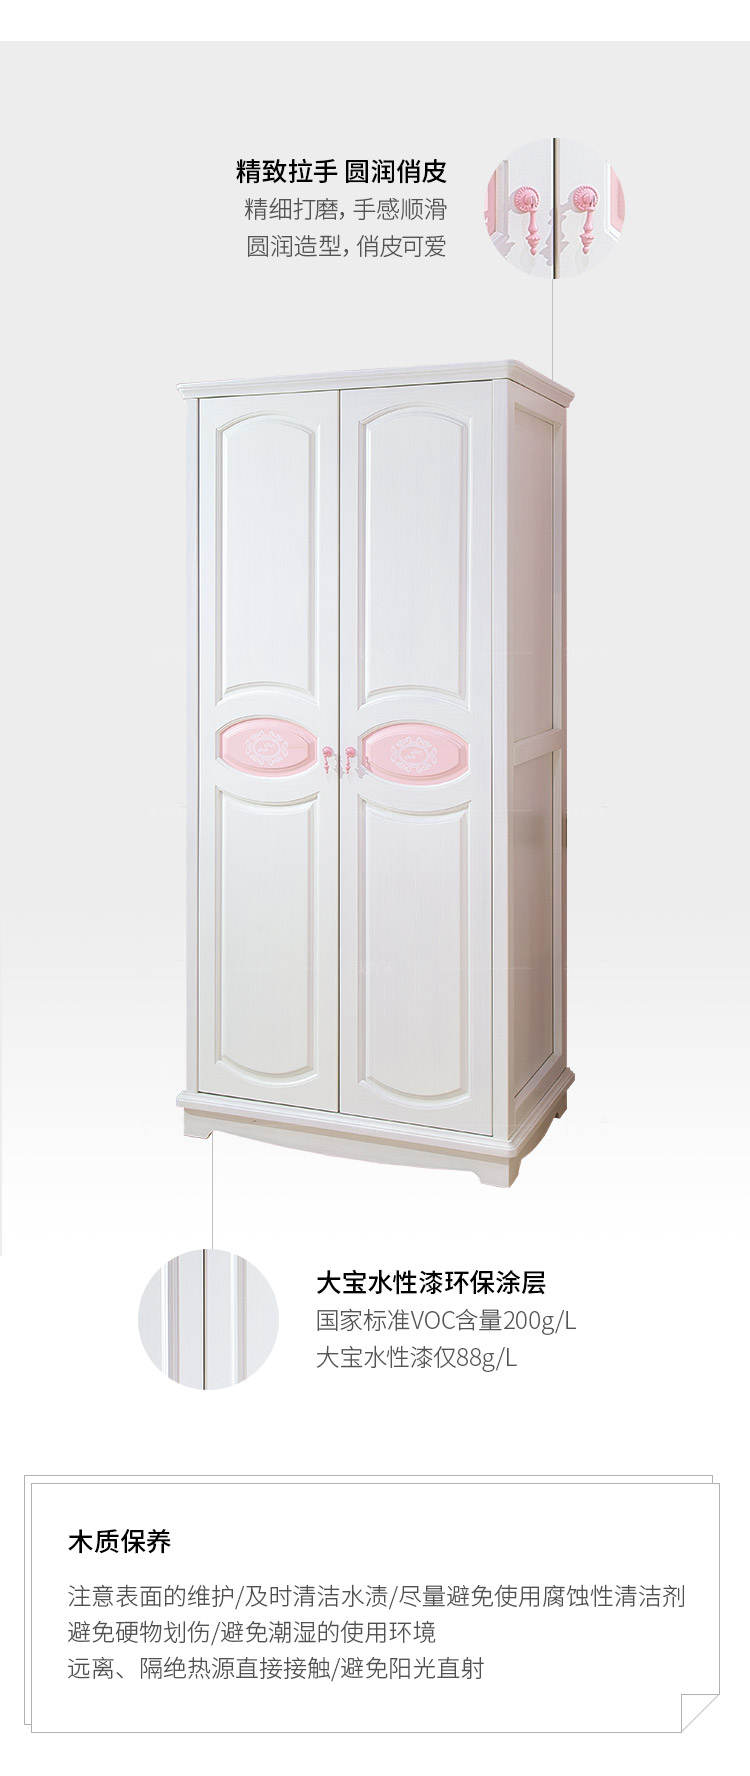 美式儿童风格美式-克里丝衣柜的家具详细介绍